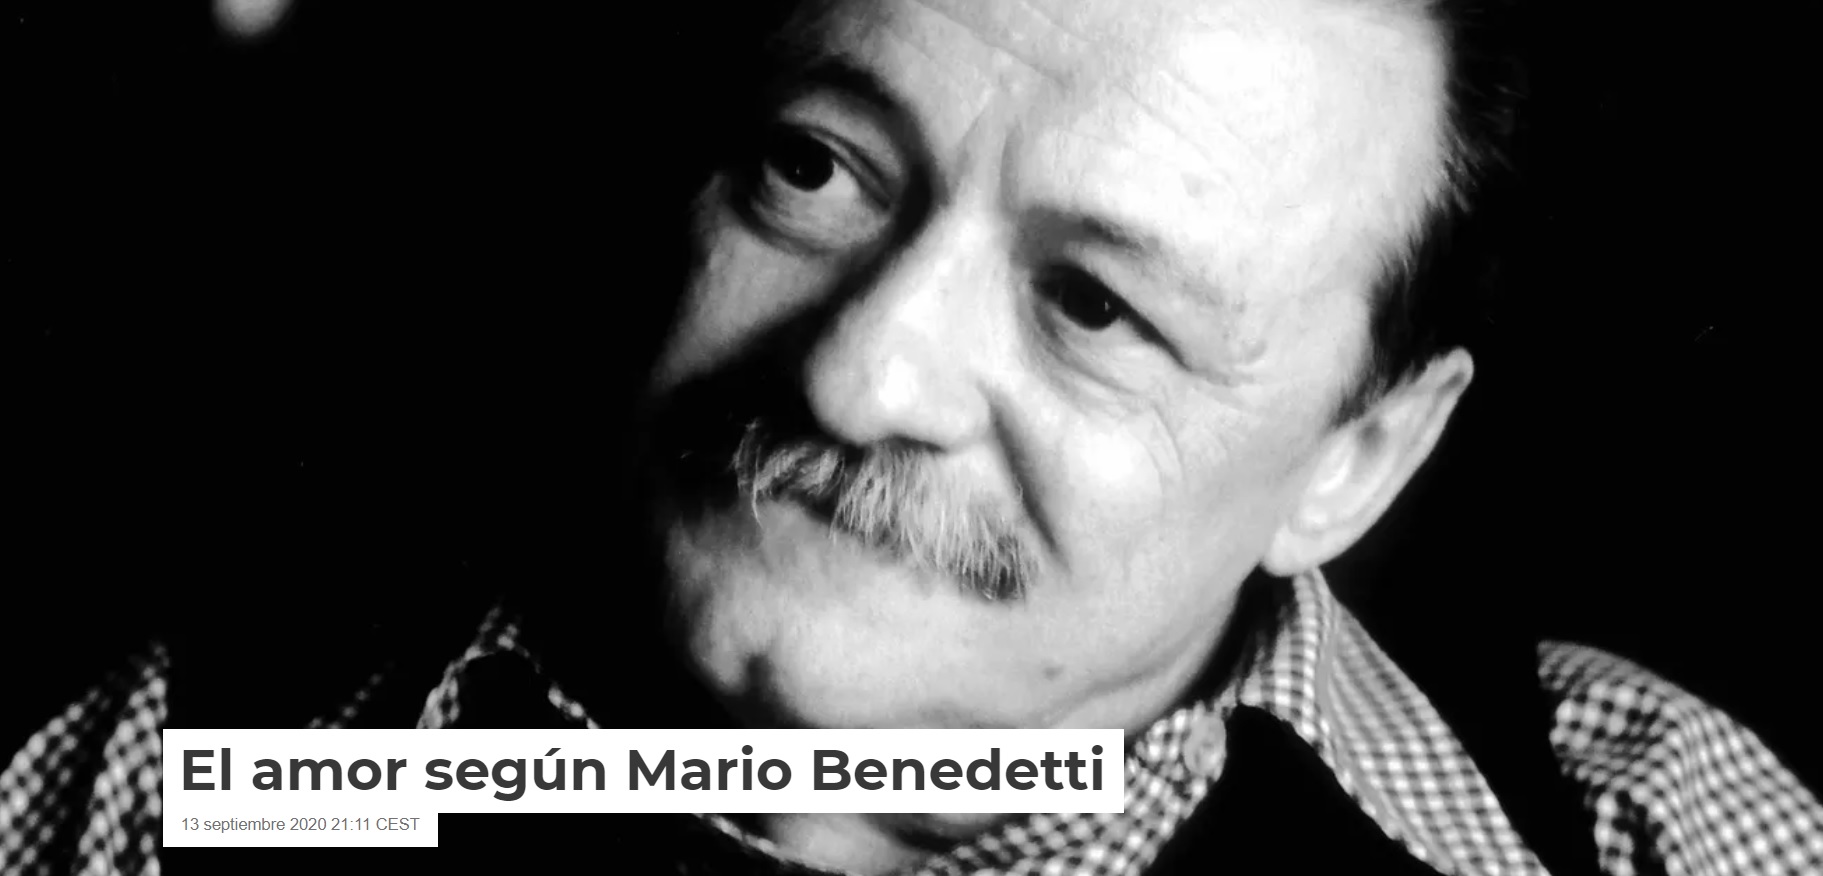 El amor según Mario Benedetti, por Anton